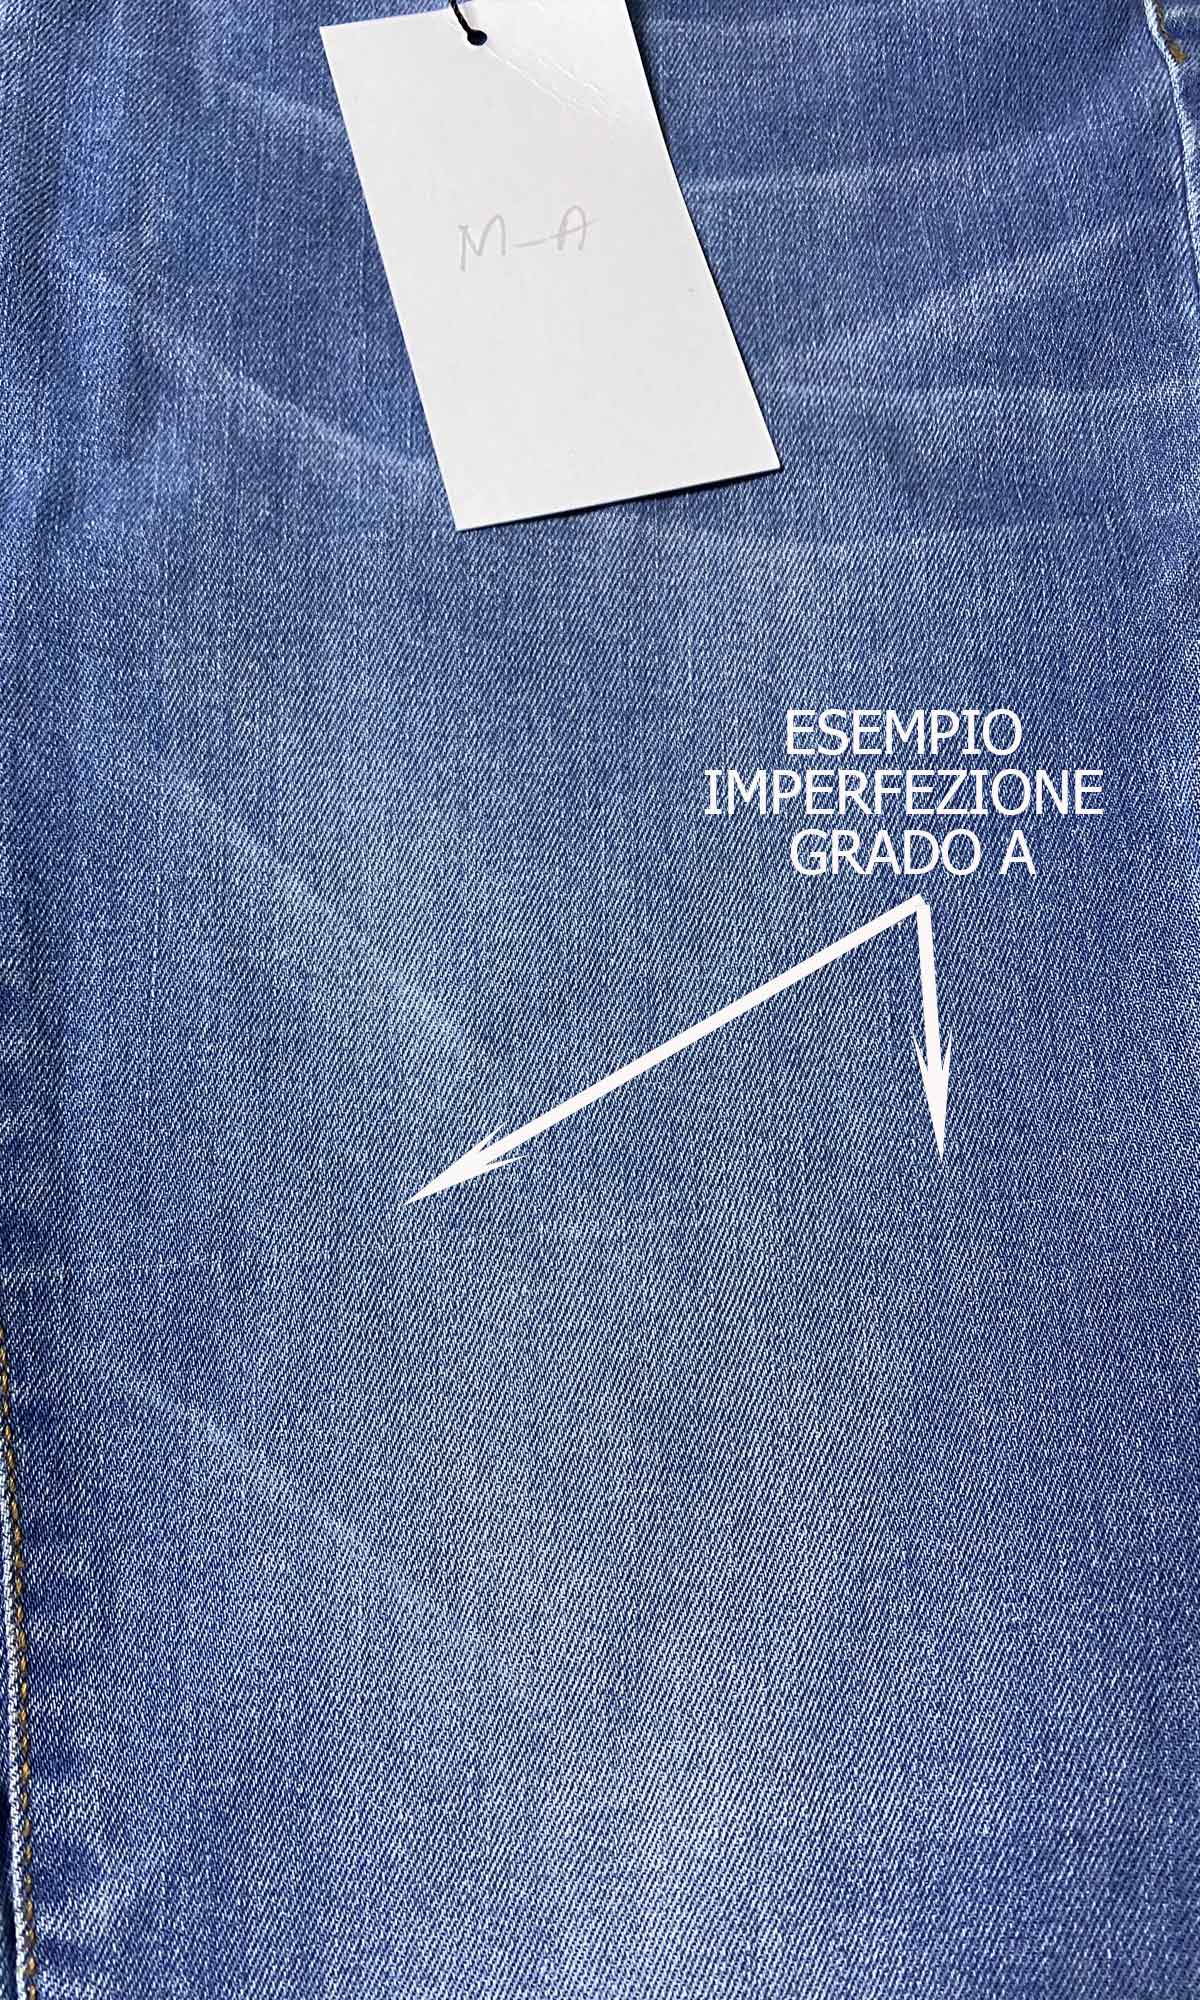 Jeans Premaman Con Piccoli Difetti - Grado A e B